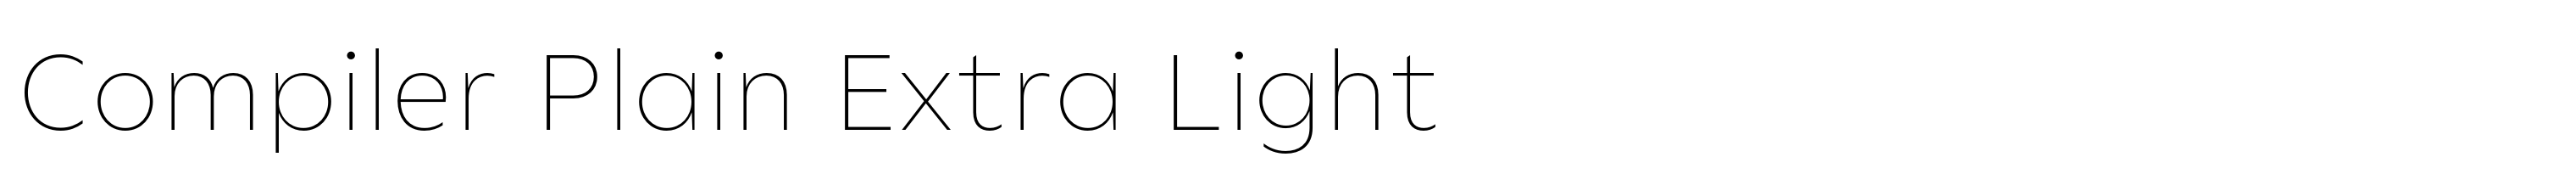 Compiler Plain Extra Light